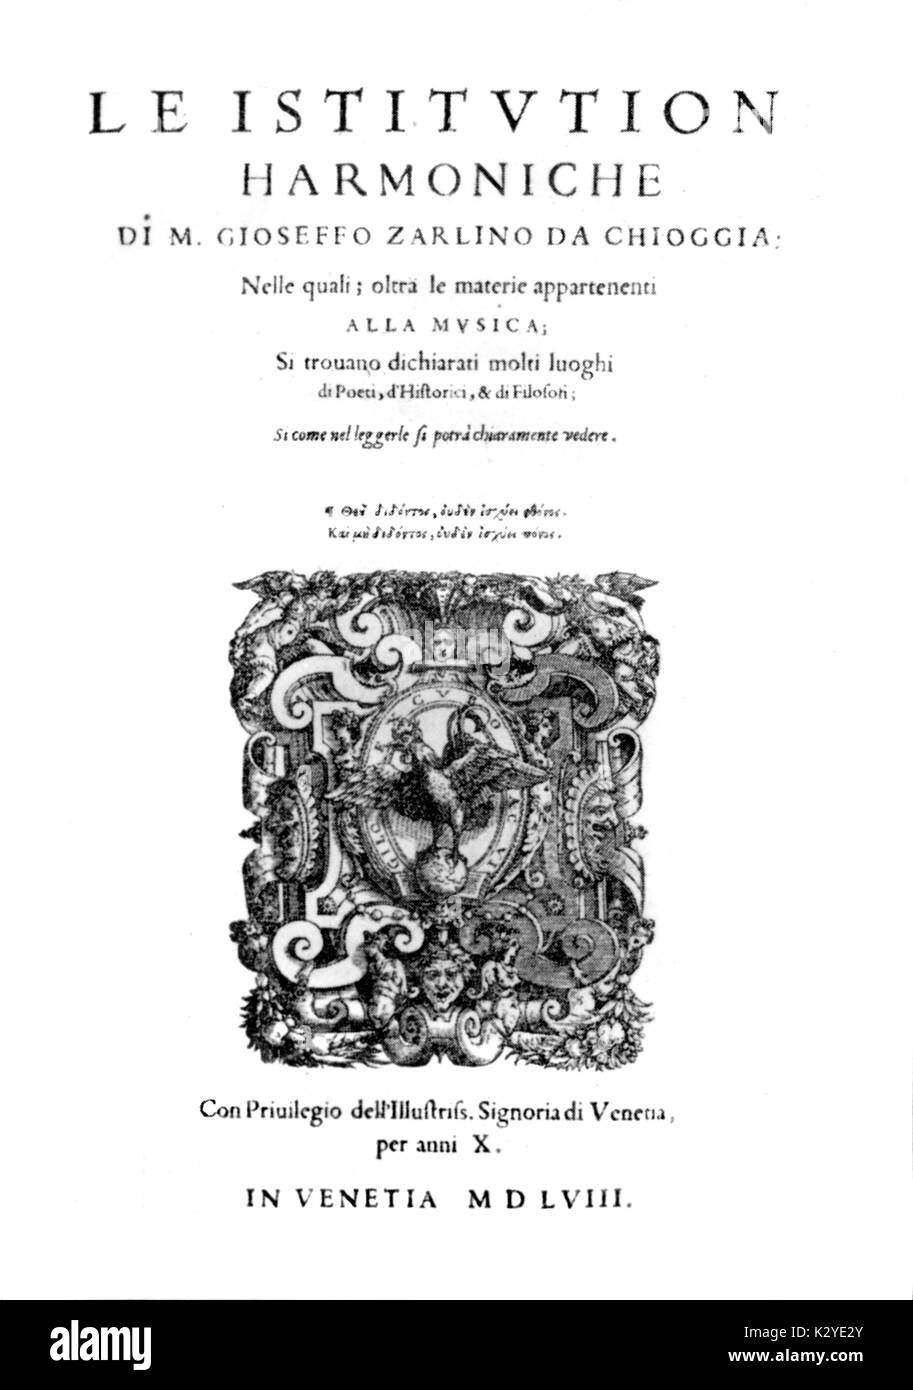 ZARLINO, maestro Gioseffo - Le Istitutione Harmoniche pagina titolo, Venezia, 1558. Venetian teorico musicale, 1517-1590. Fondatore della duplice principio armonica. Foto Stock